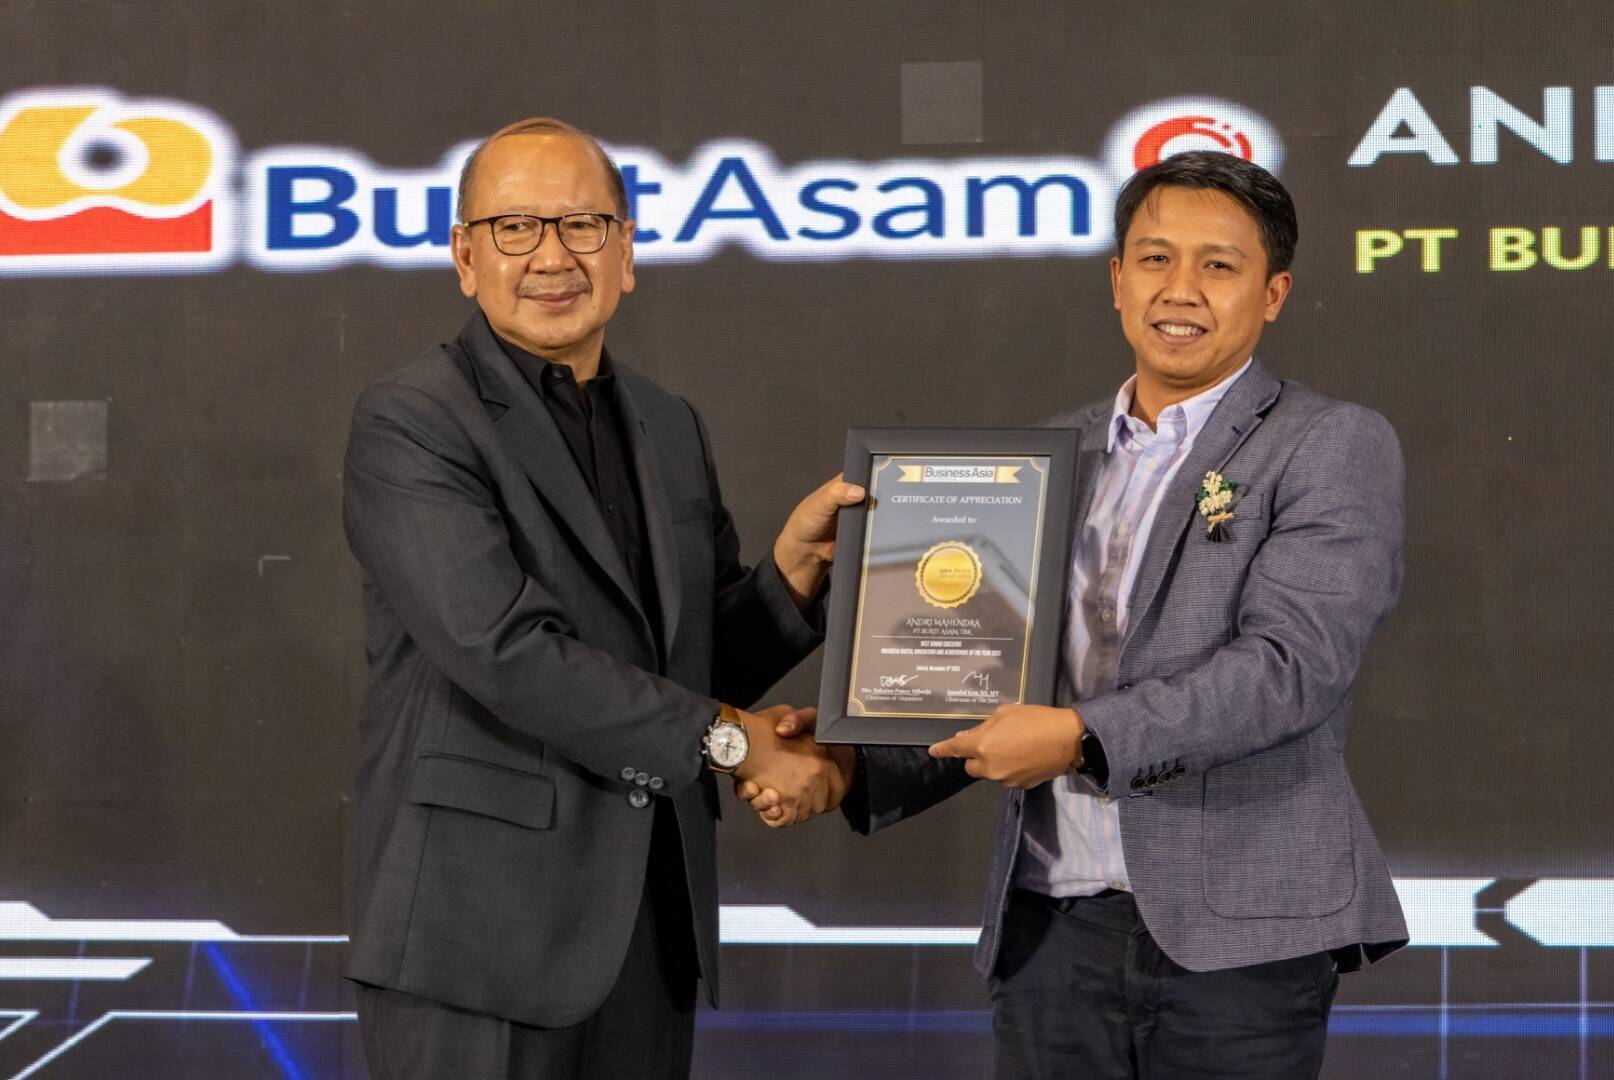 Bukit Asam (PTBA) Boyong 4 Penghargaan IDIA Awards 2023